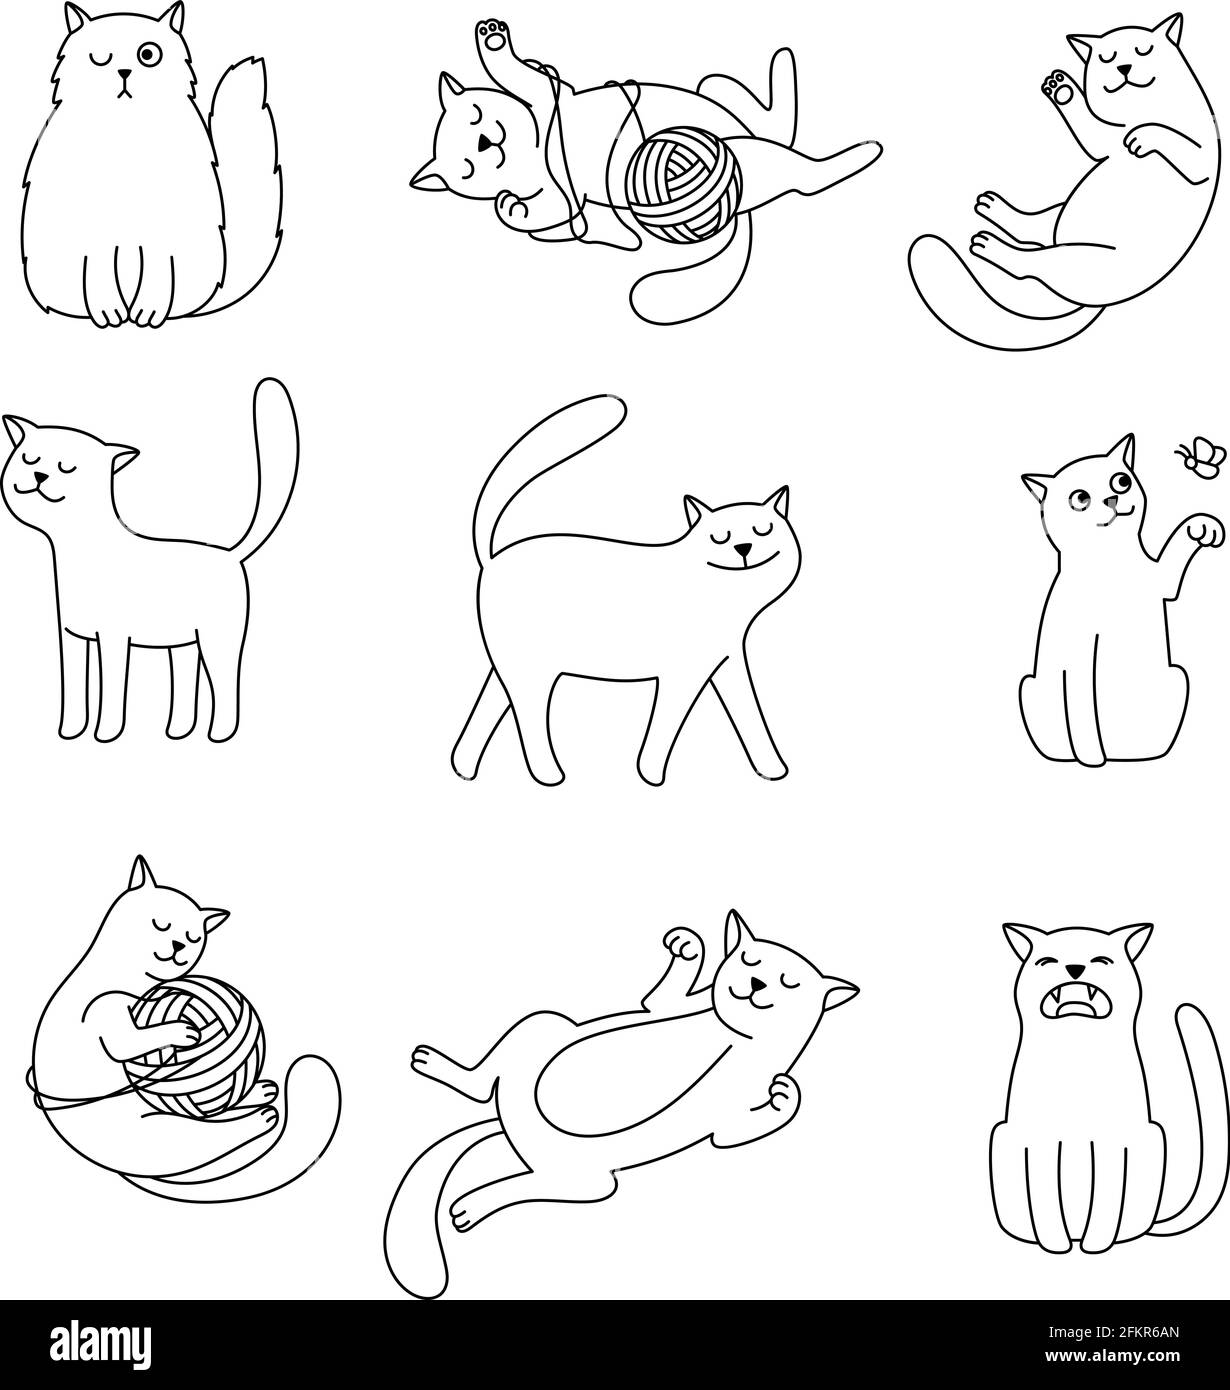 Gribouillages de ligne de chats. Vector dessin animé mignon dessin de chat, lignes minimalistes jouant des images de chatons domestiques isolées sur fond blanc Illustration de Vecteur